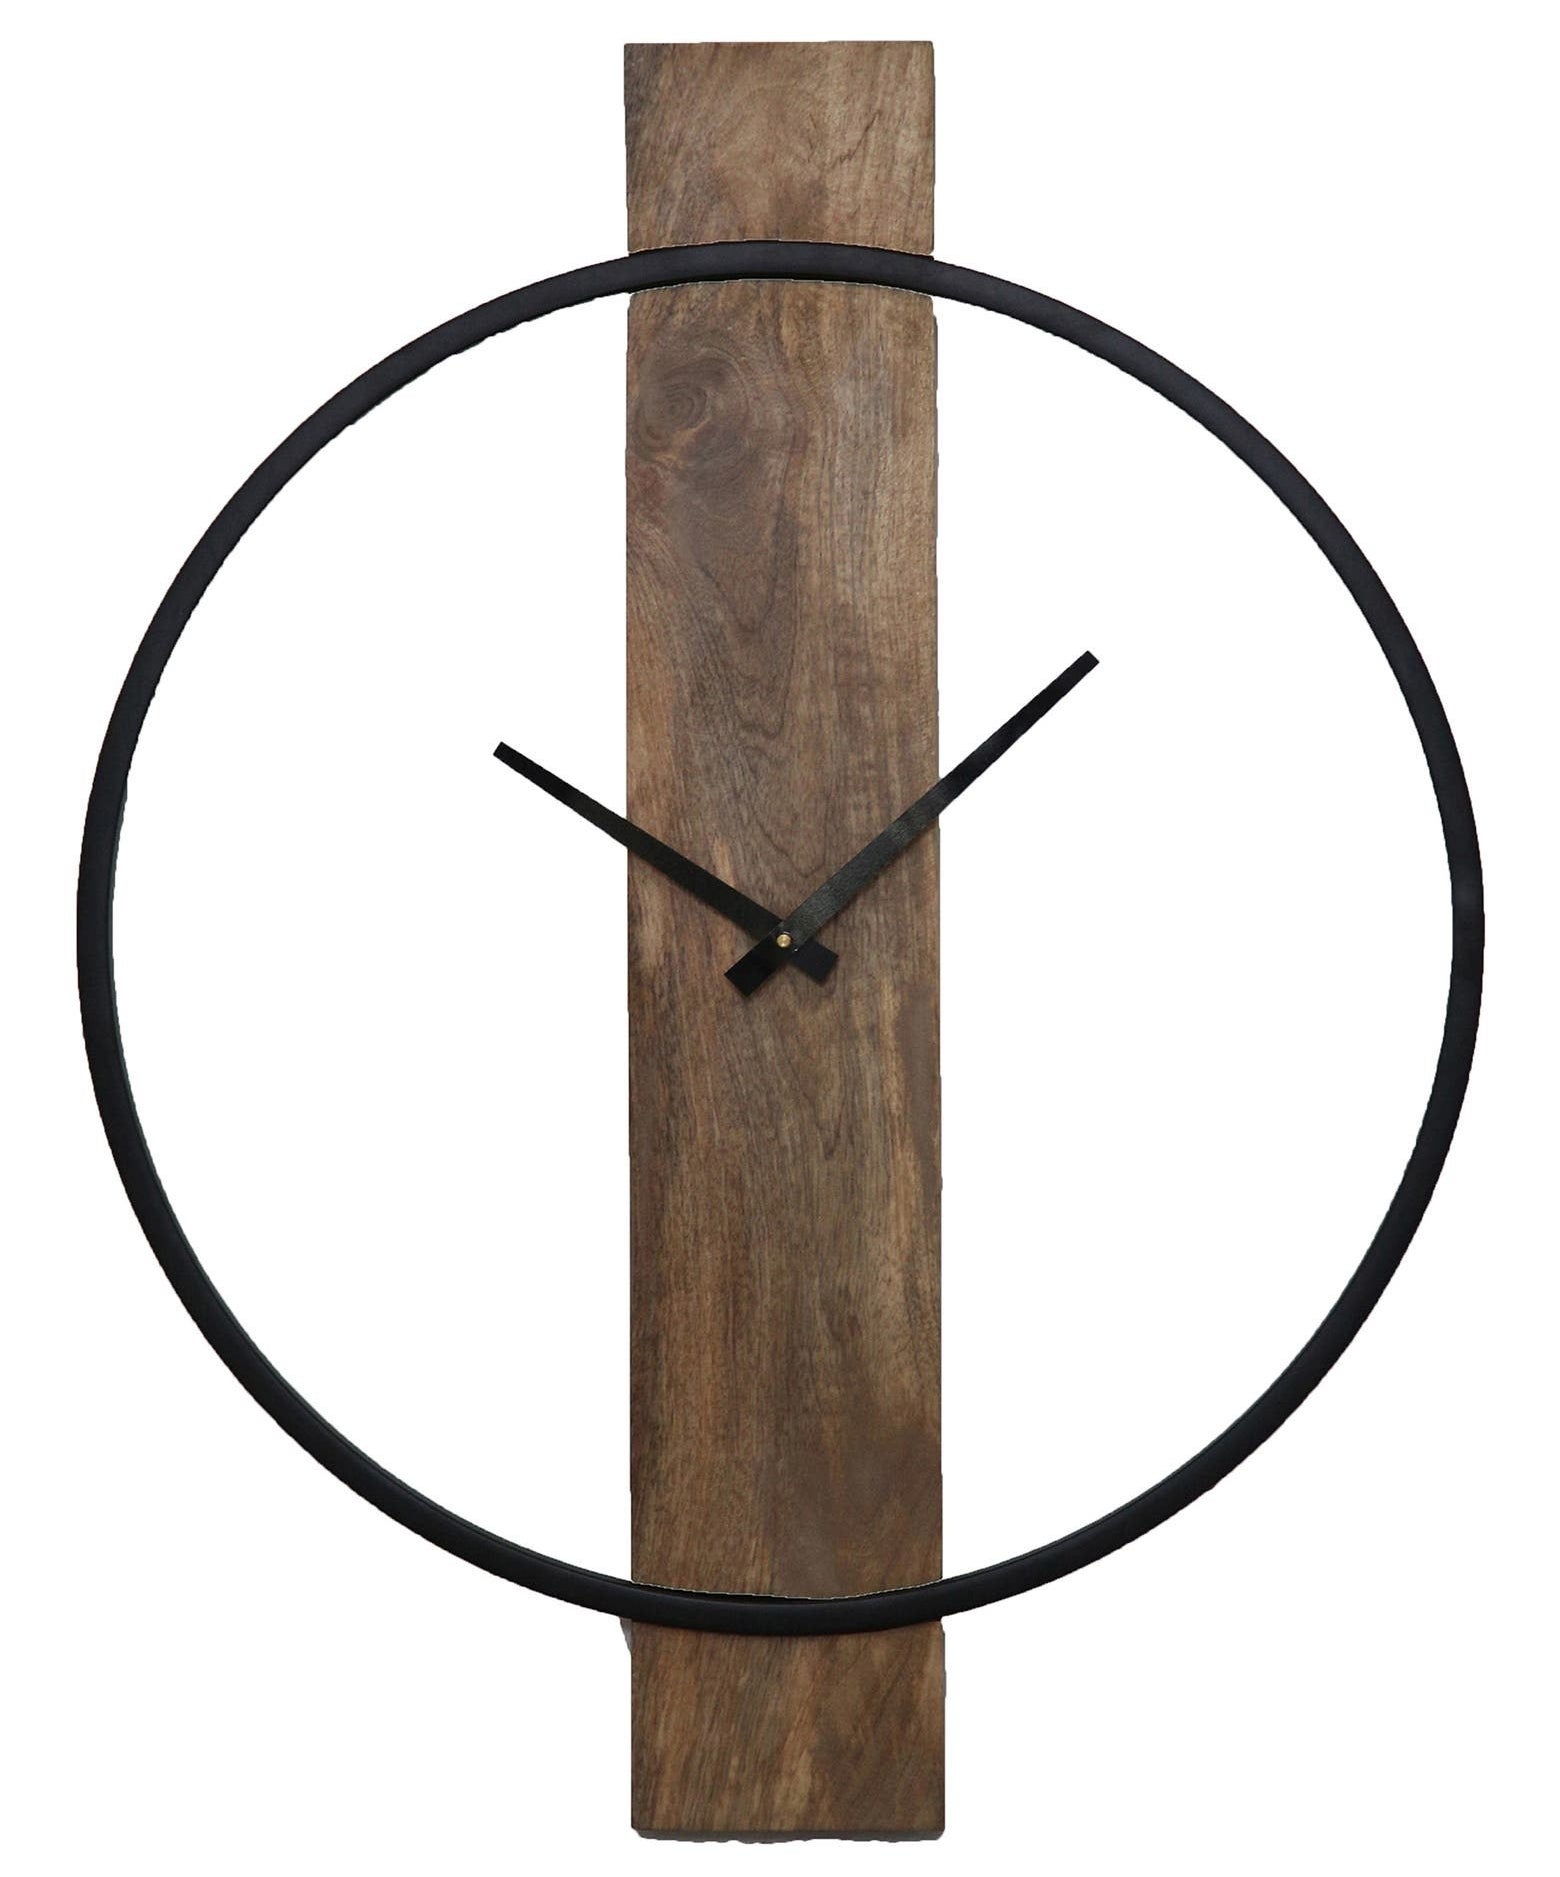 The wood and metal circular wall clock